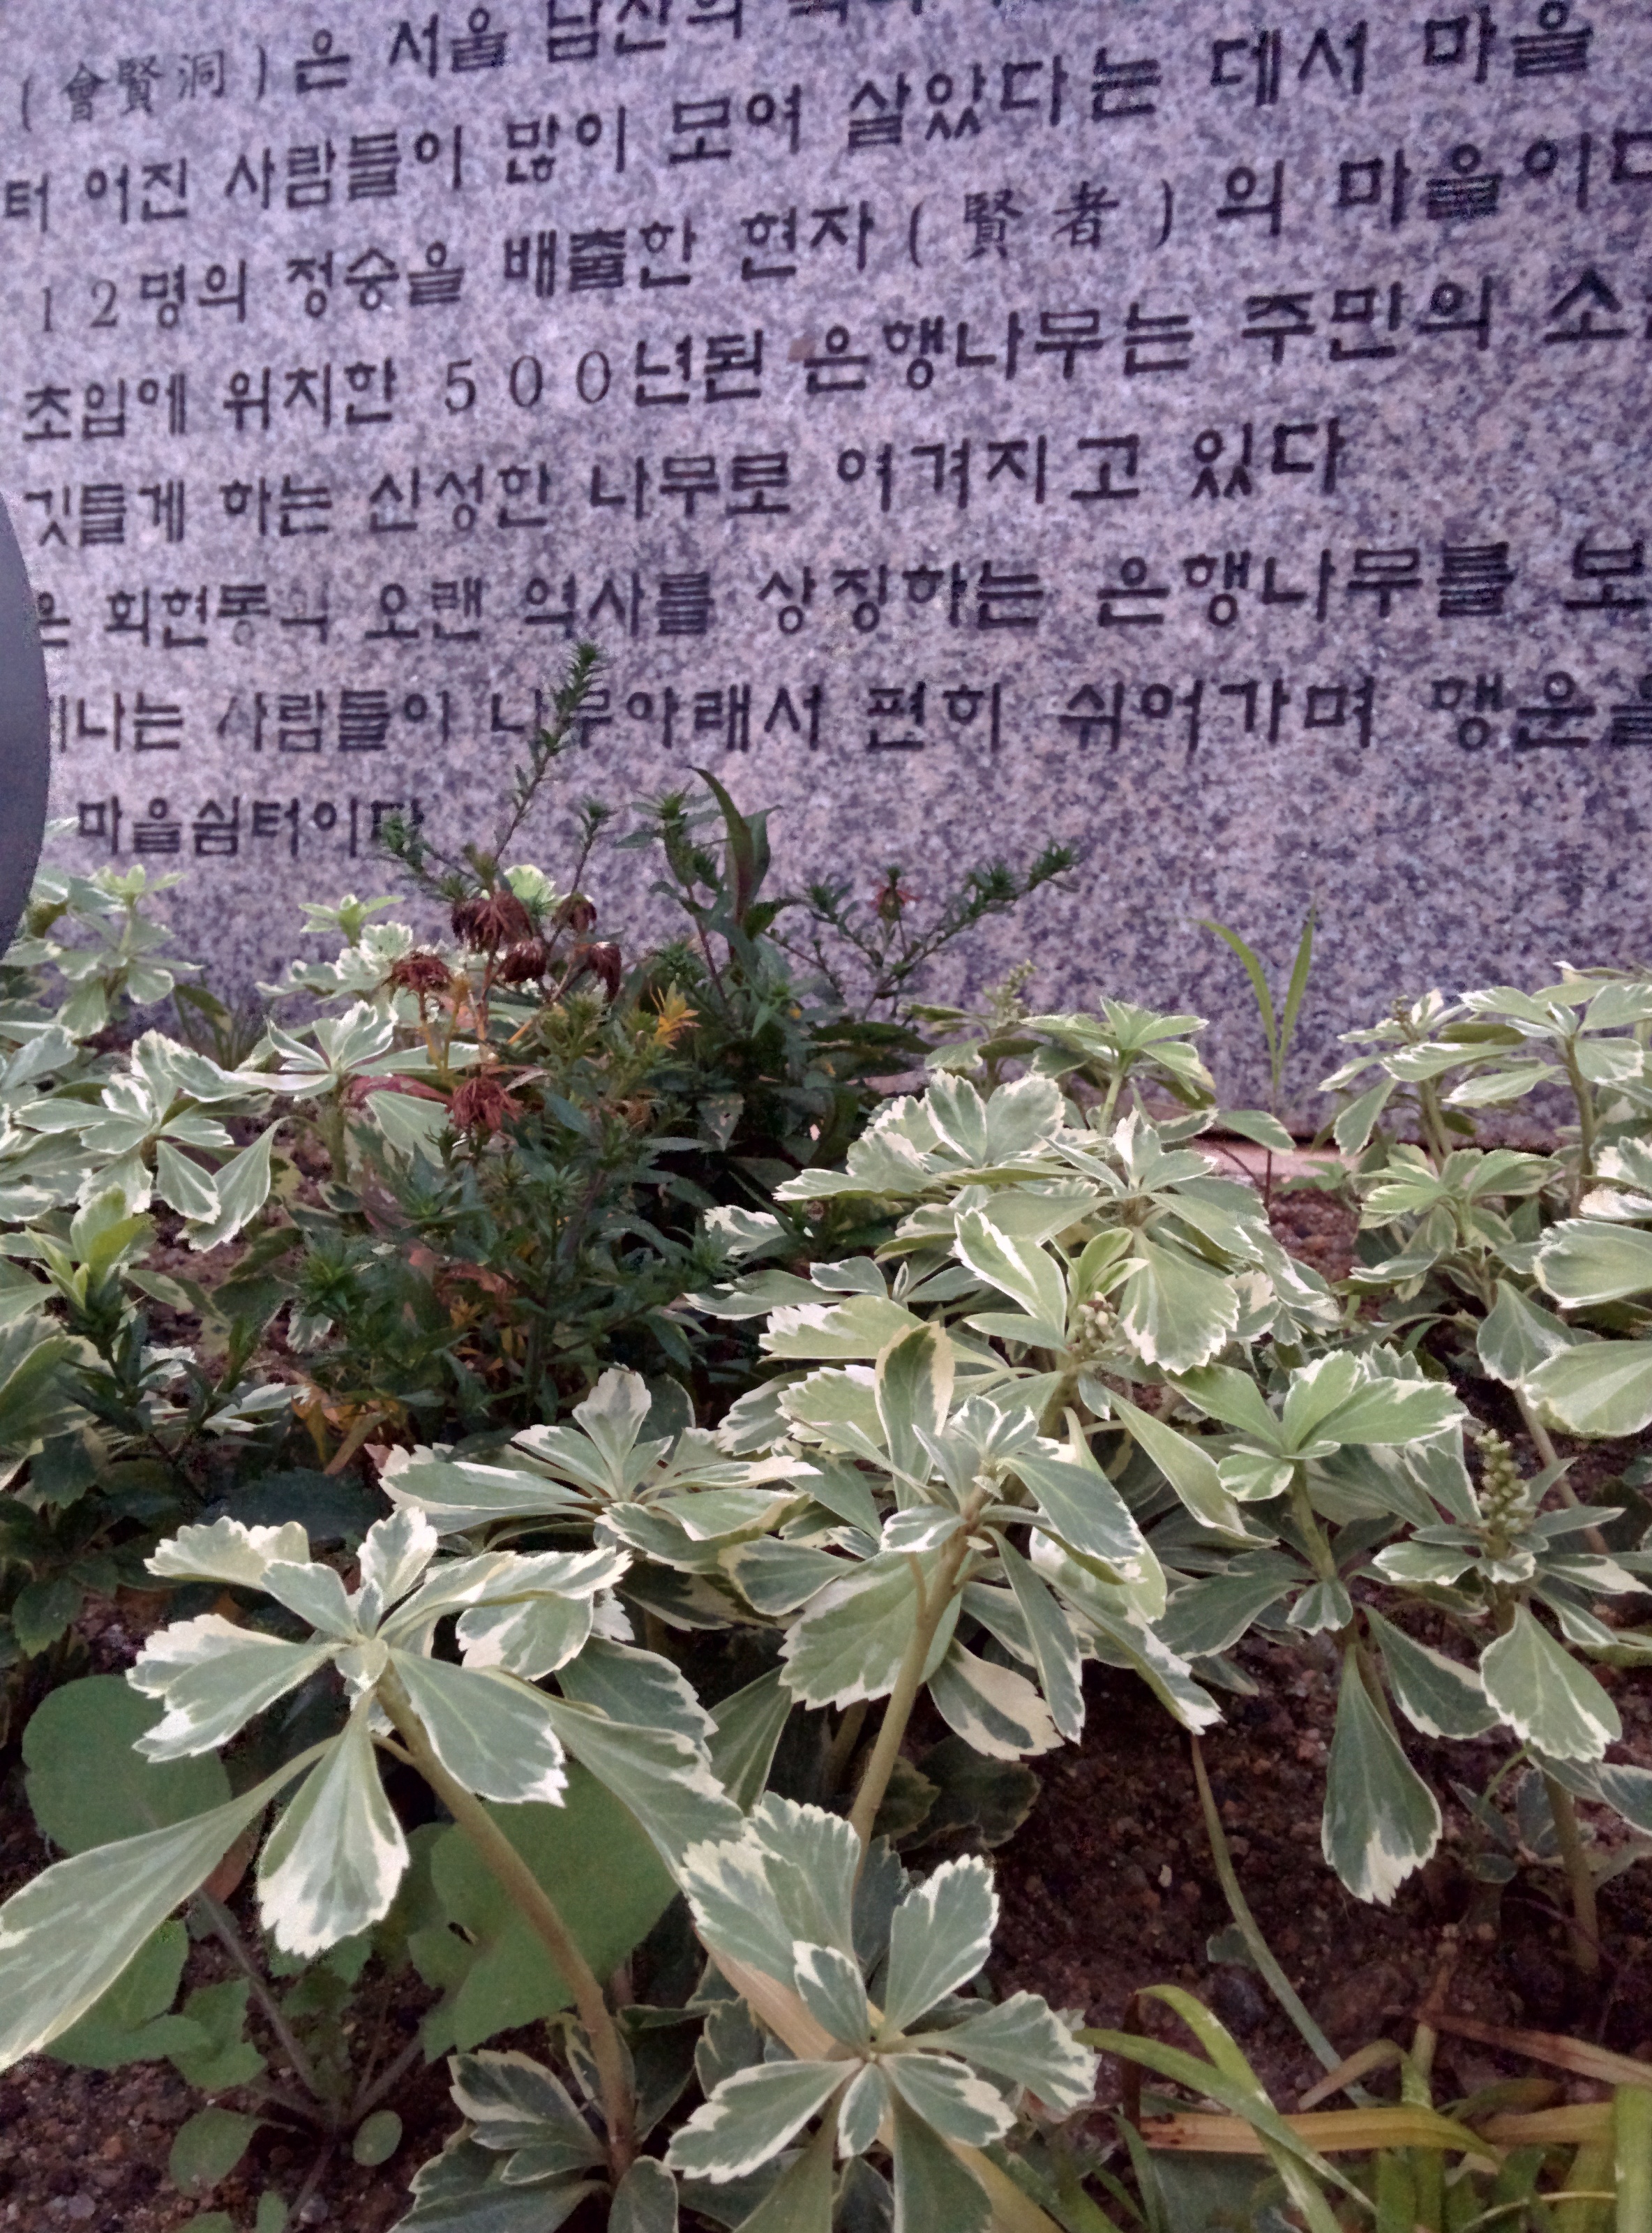 IMG_20151110_064856.jpg 잎 테두리가 하얀 수호초, 무늬수호초